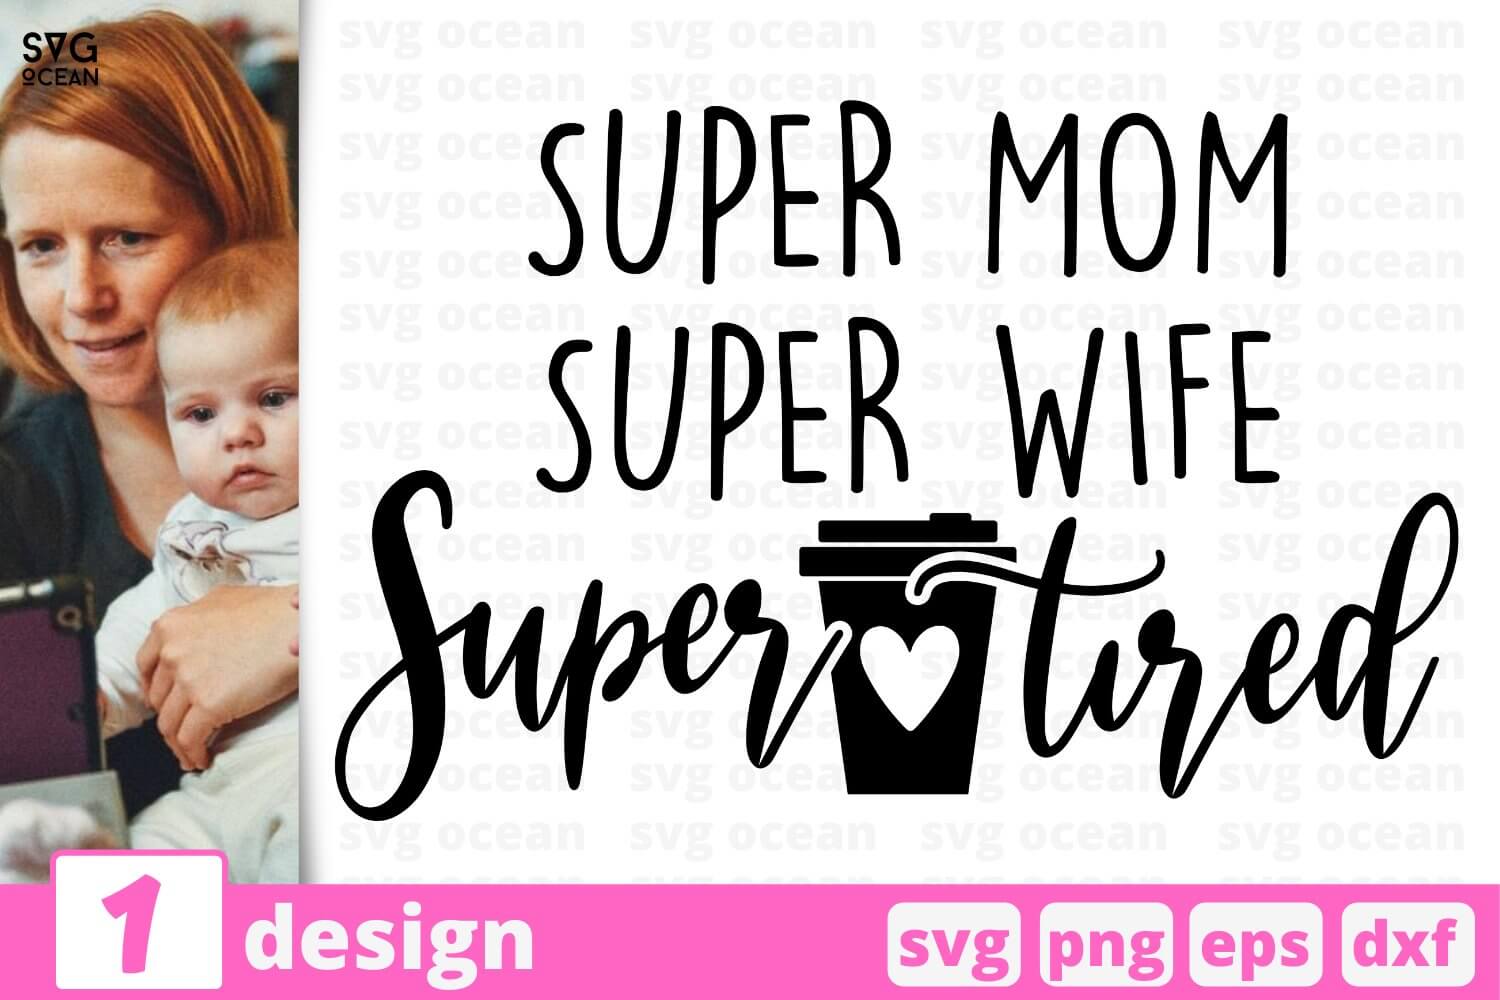 Super Mom Super Wife Super Tired.